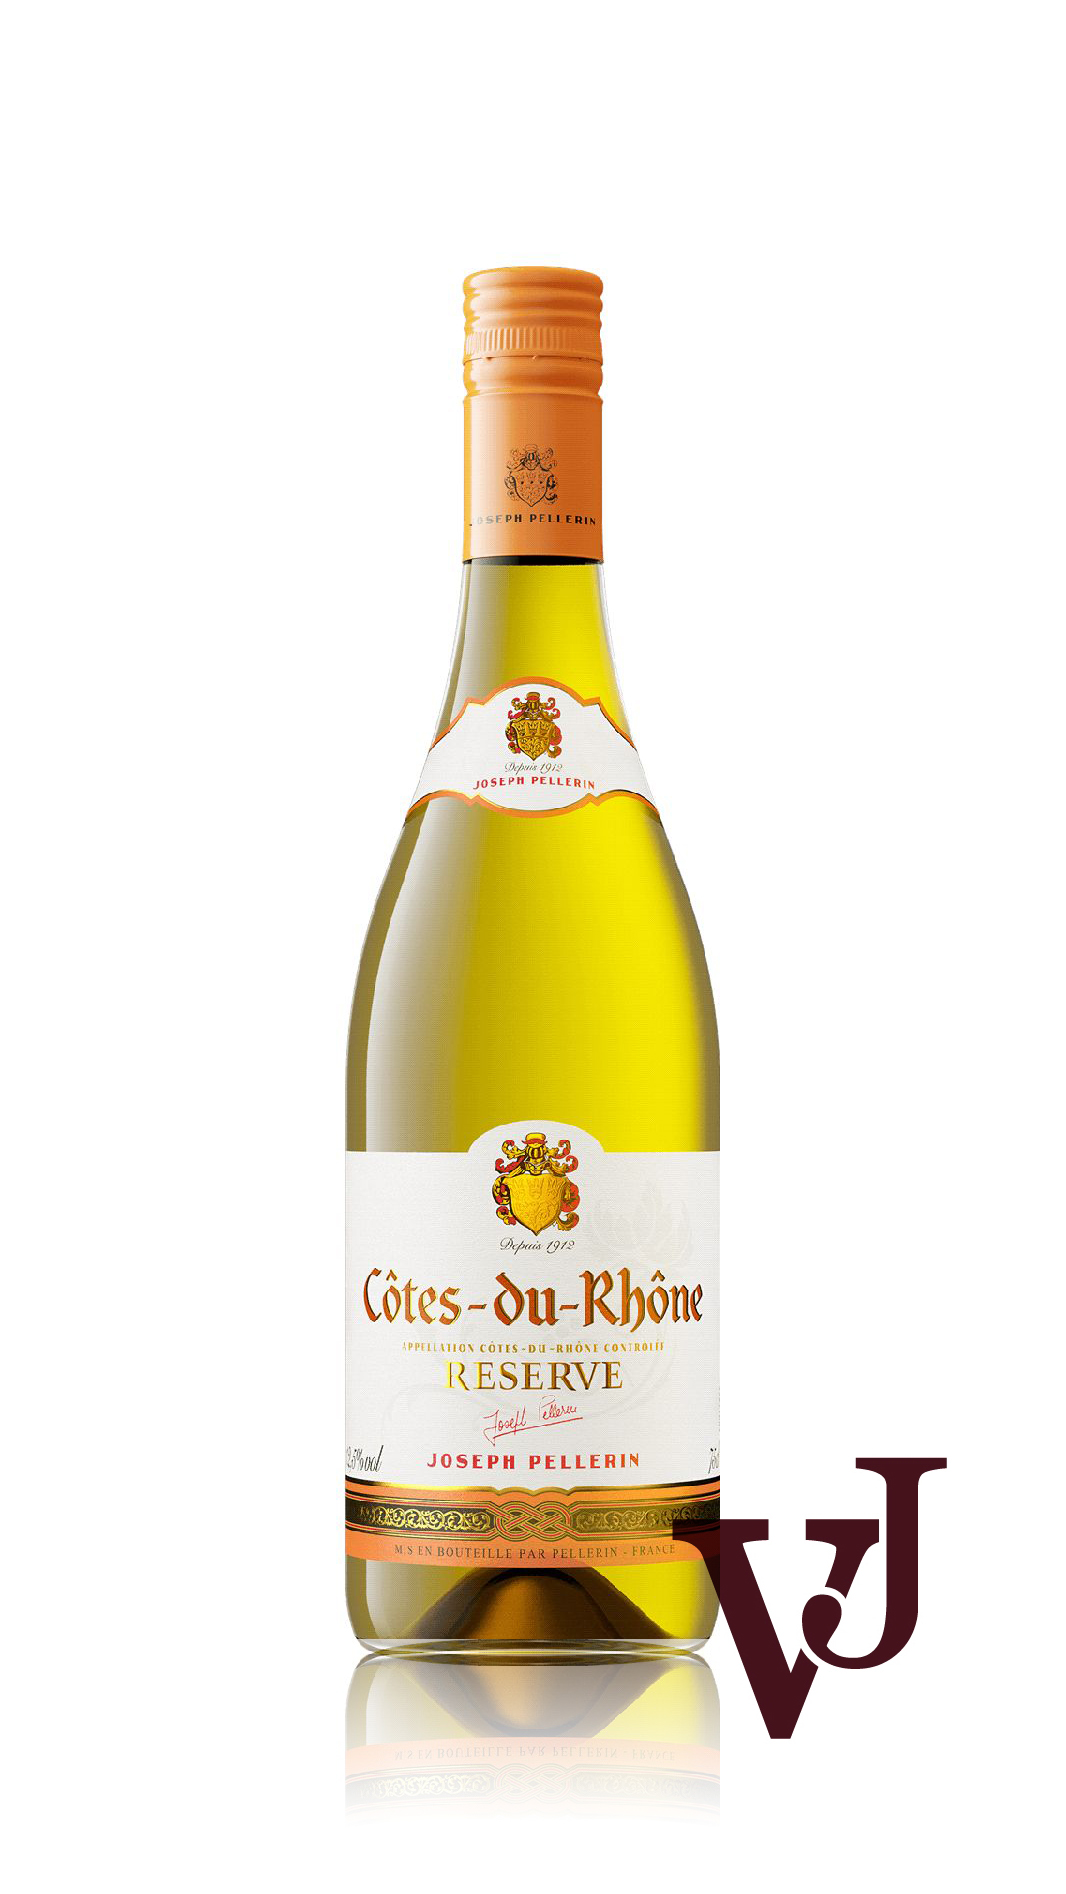 Vitt Vin - Côtes du Rhône Reserve Blanc artikel nummer 7660201 från producenten Pellerin från området Frankrike